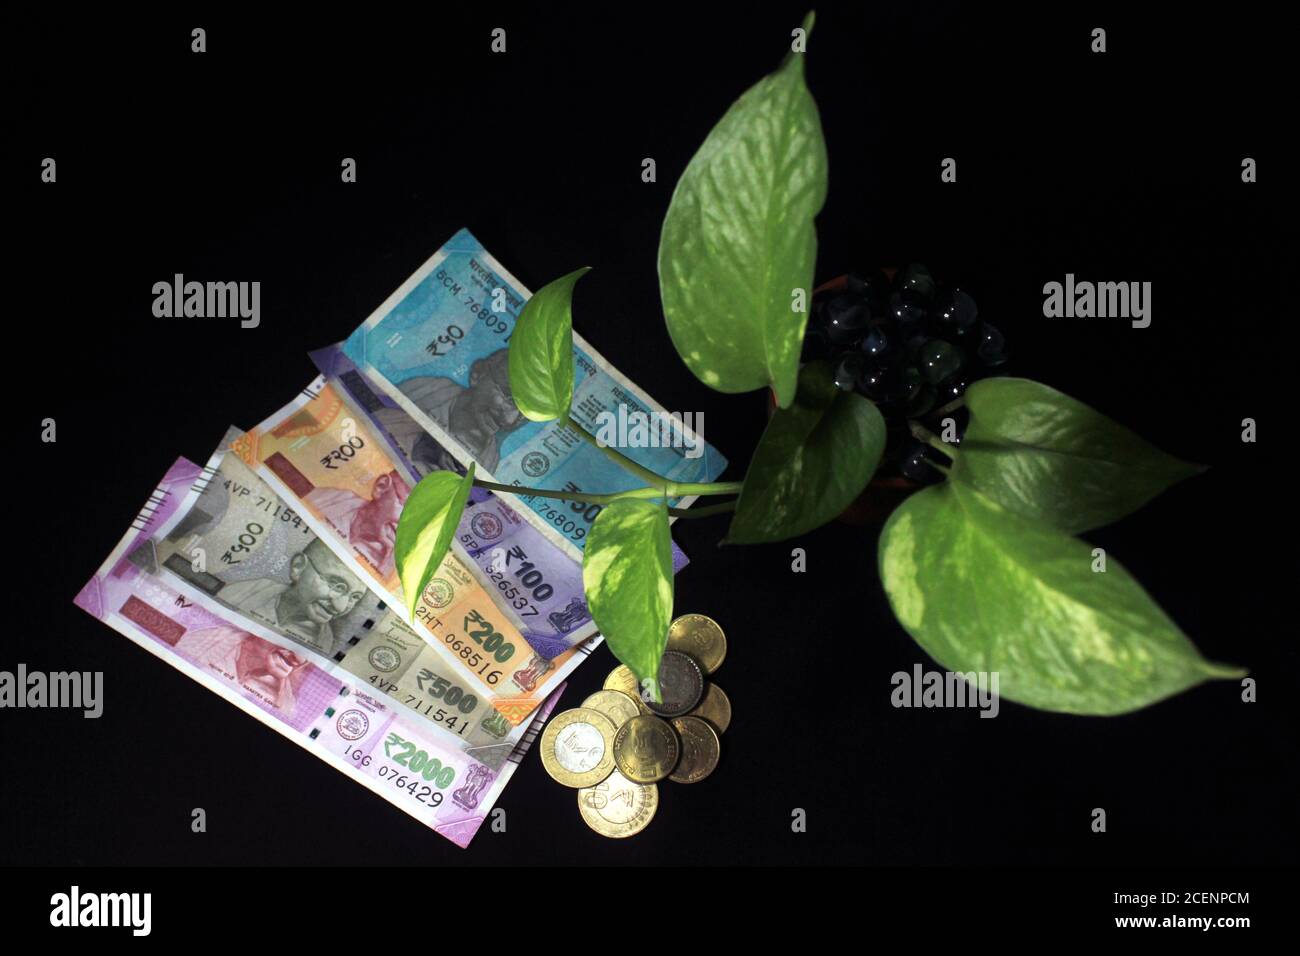 L'ivie du diable (Epipremnum aureum) ou feuille de plante de monnaie avec 50, 100, 200, 500, 2000 roupie note de monnaie sur fond noir. Billet de banque avec plante en croissance Banque D'Images